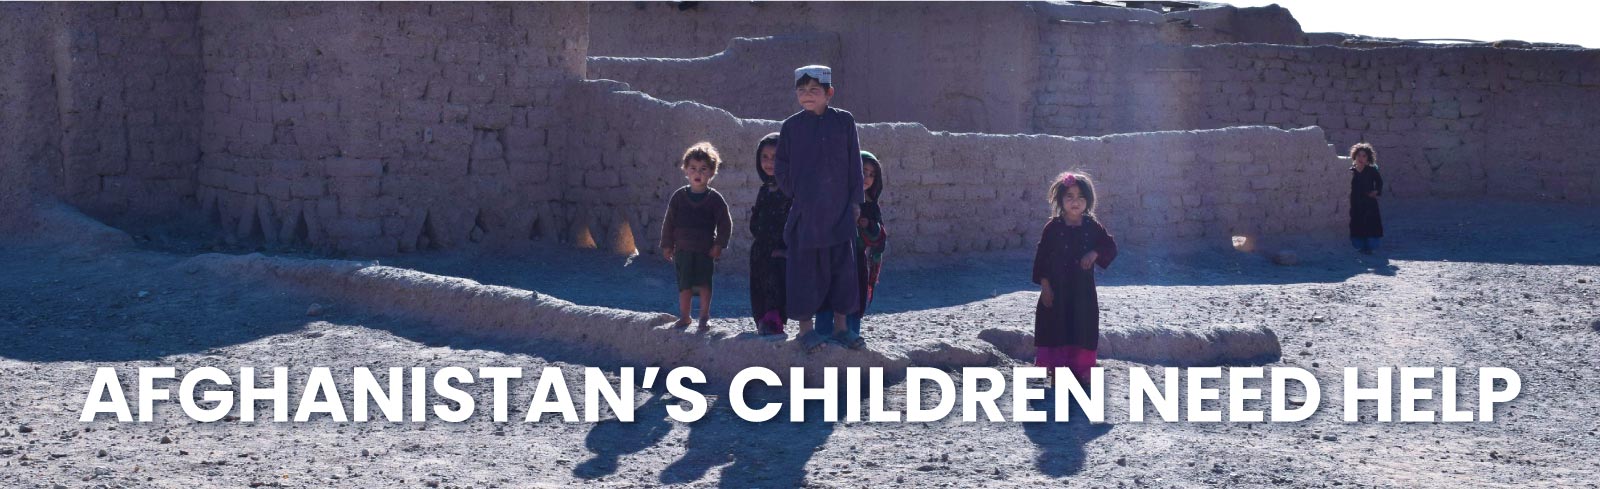 Afghanistan's Children Need Help